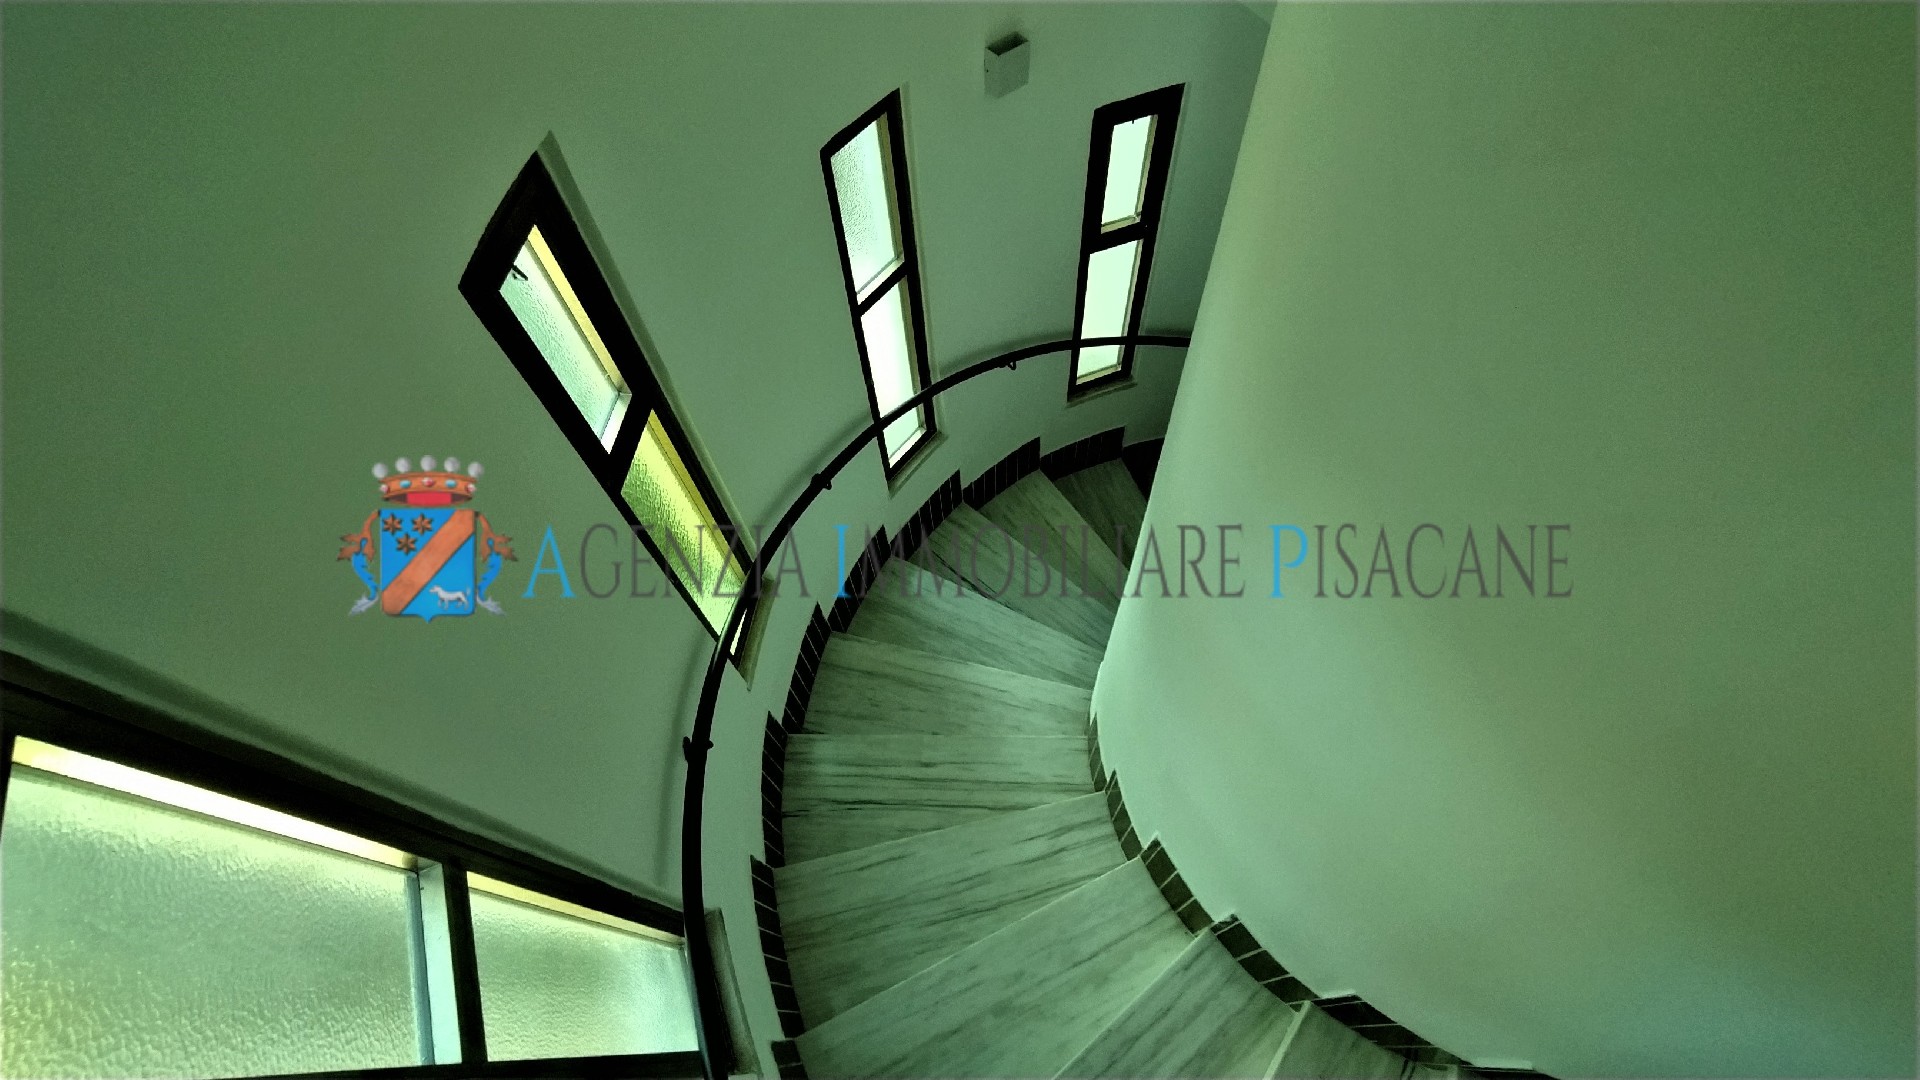 Scala - Agenzia Immobiliare & Architettura Pisacane